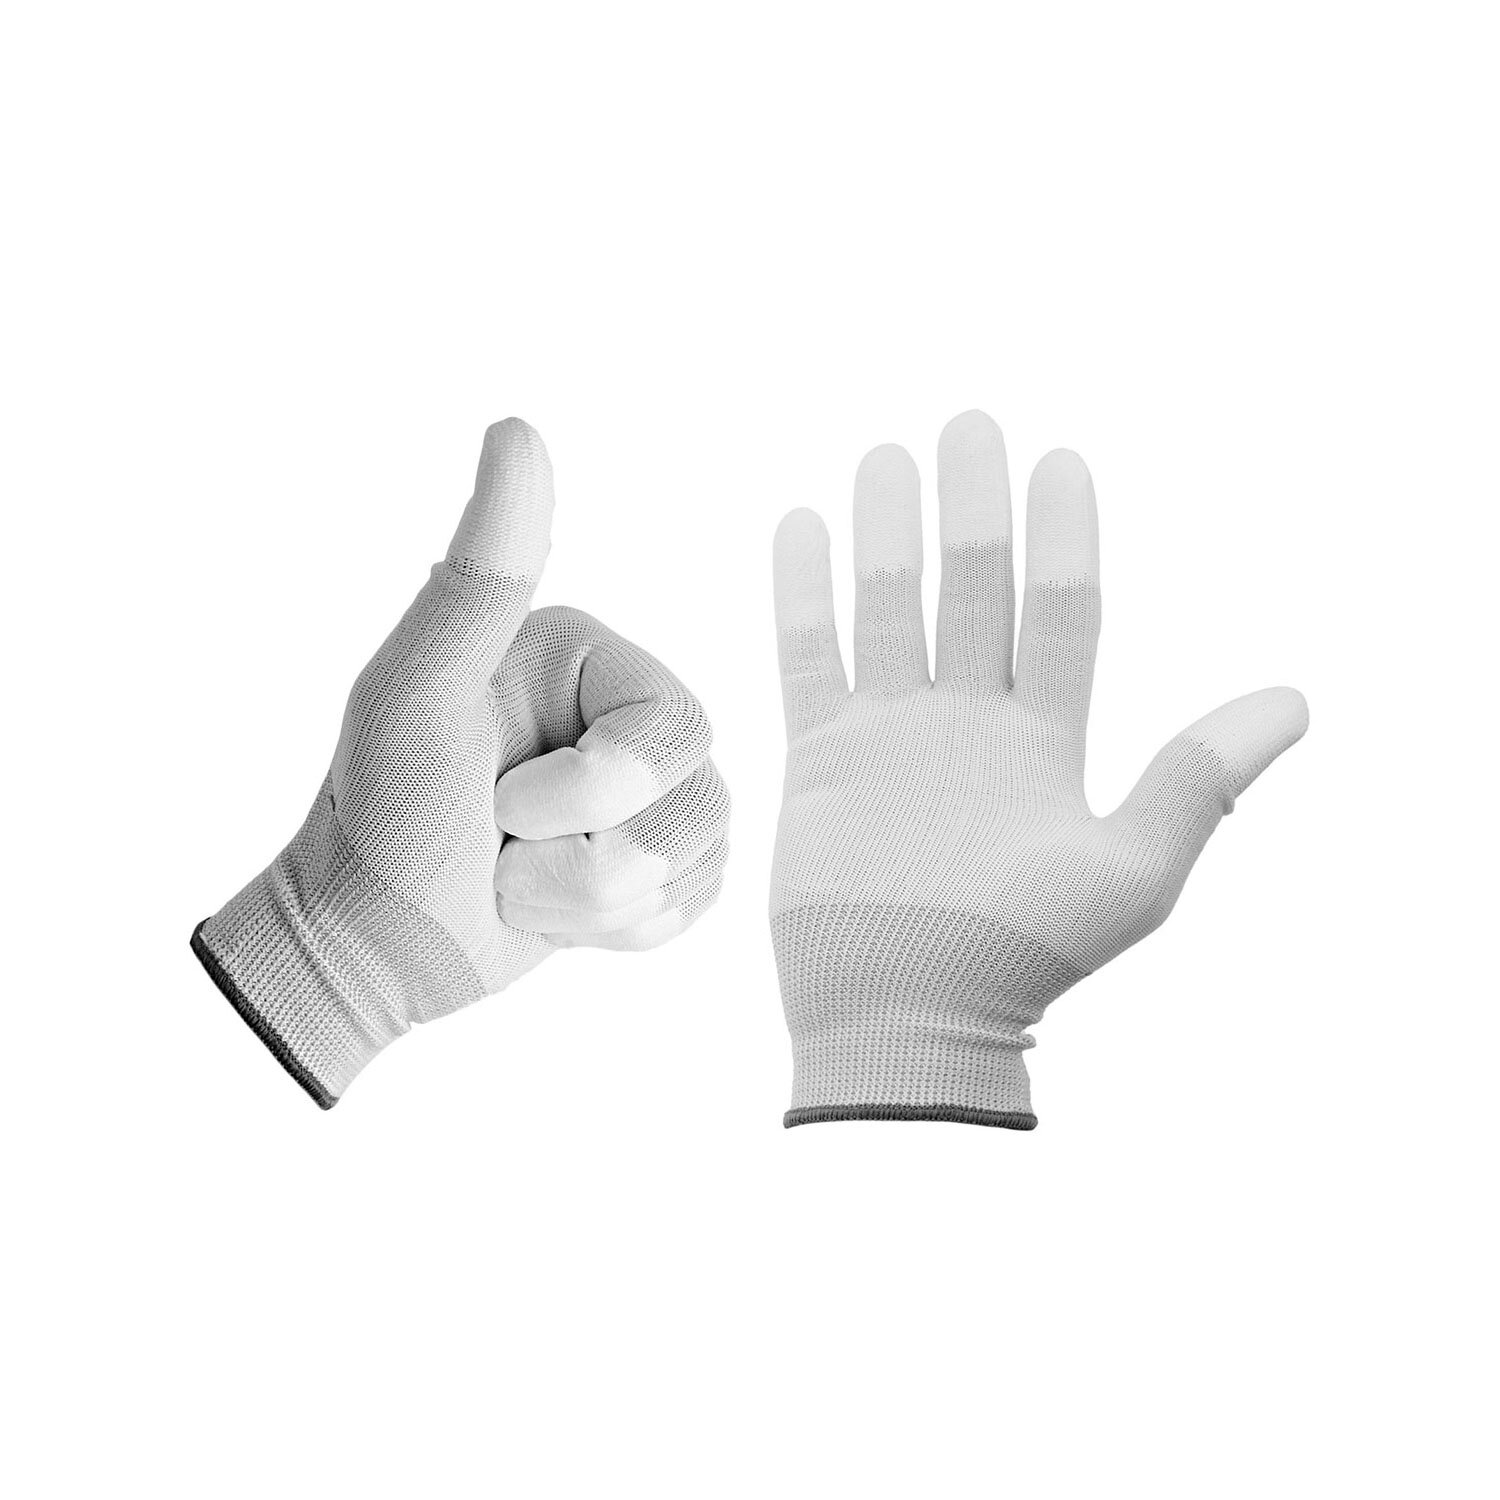 Minadax ESD Antistatik Carbon Handschuh f&uuml;r elektronische Arbeiten in Gr&ouml;&szlig;e L - ideal geeignet f&uuml;r Reiningung und Reparatur